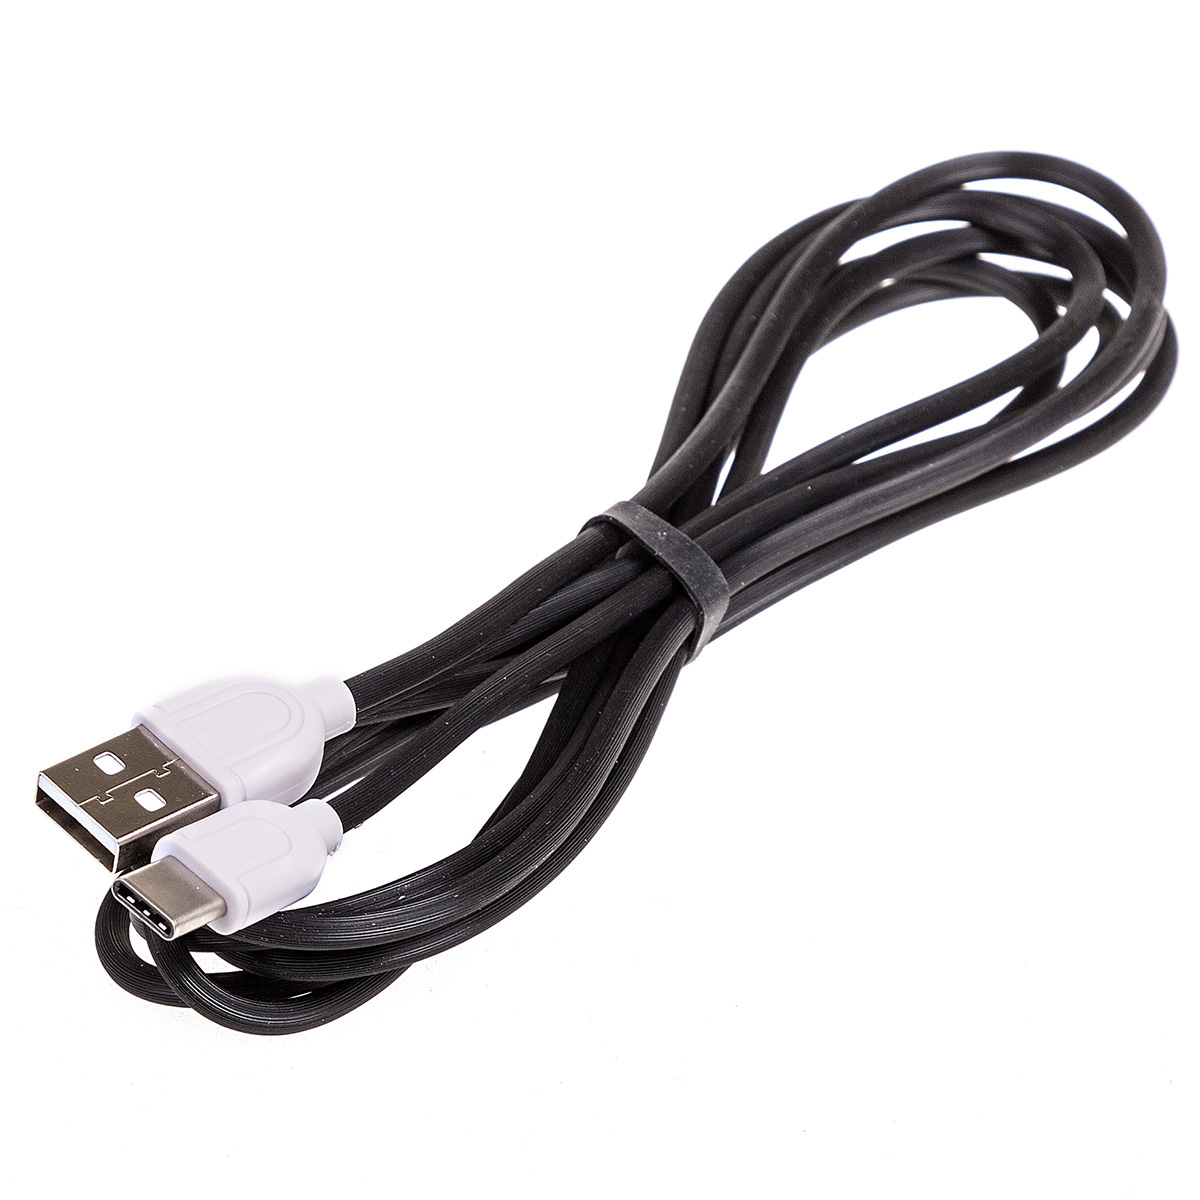 Кабель USB skyway 3.0а 2м Черный в коробке s09603005 - SKYWAY S09603005